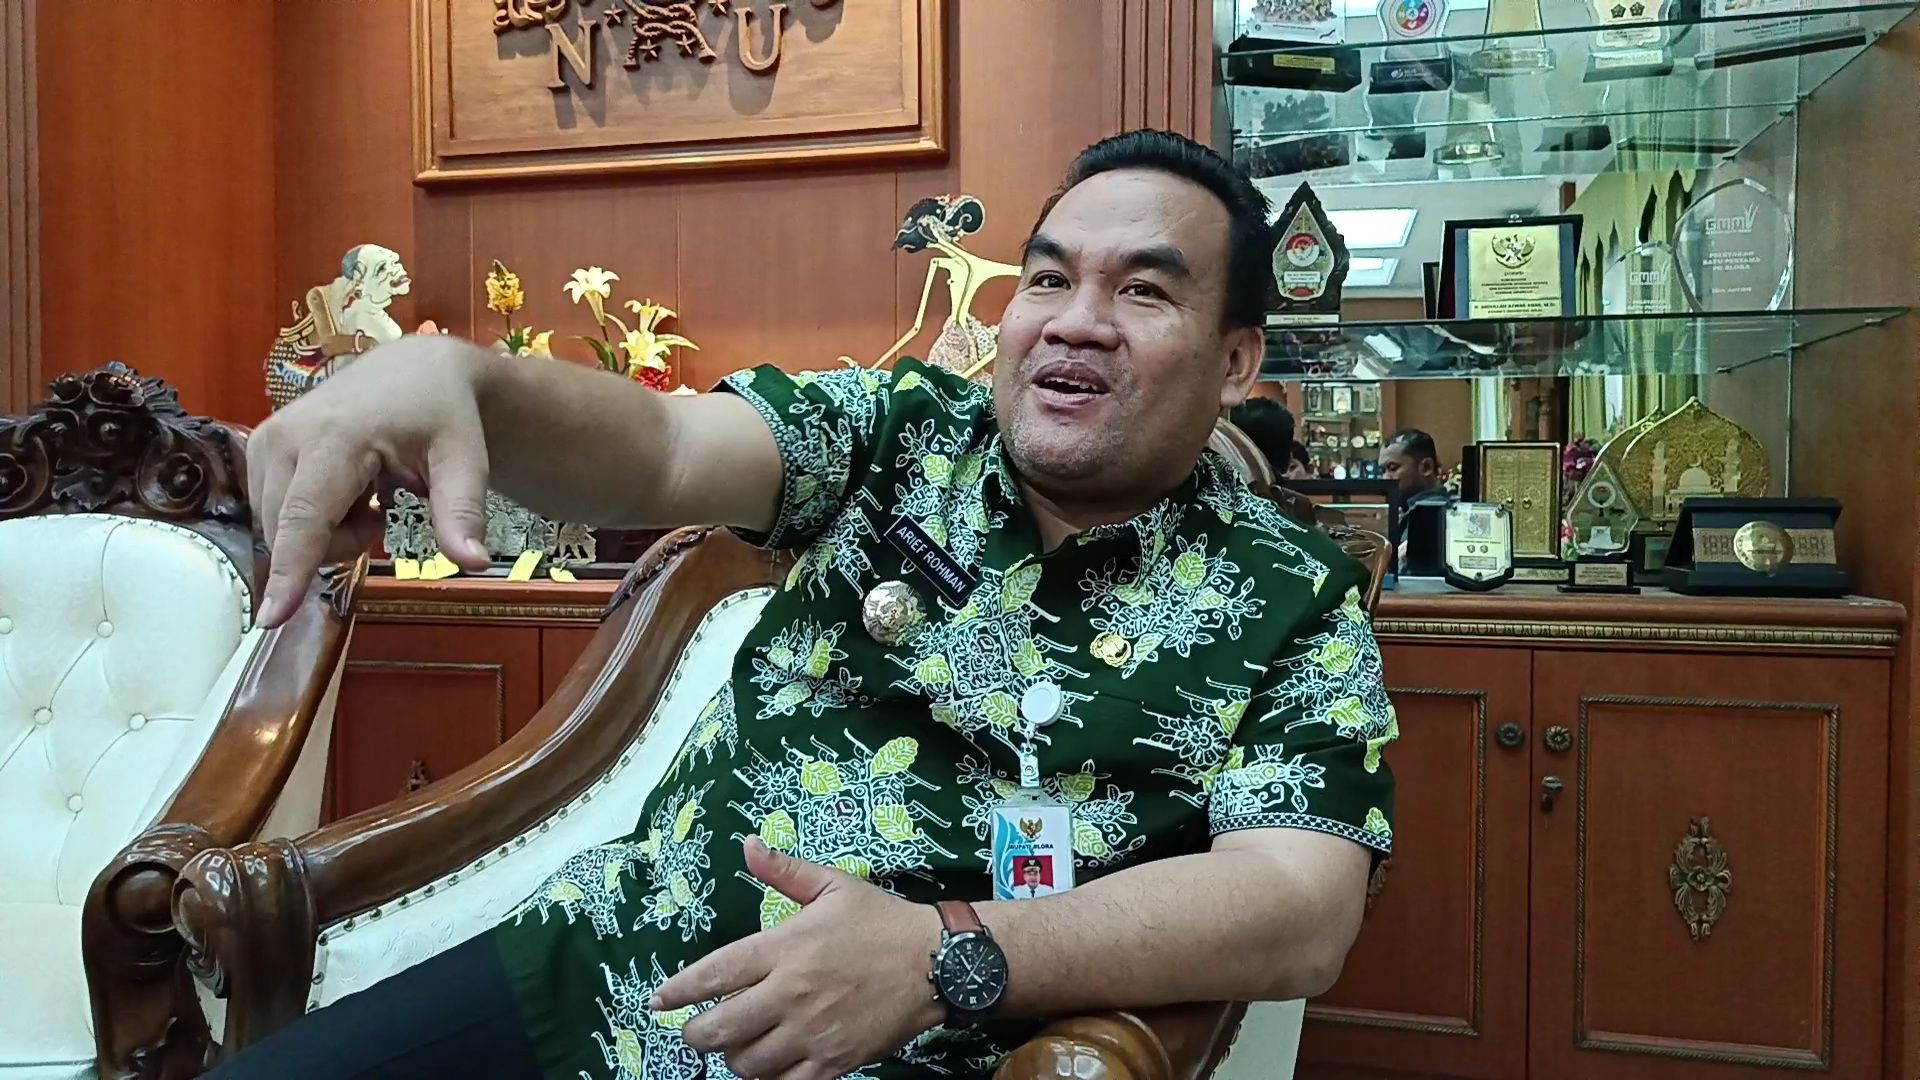 Ketua PDI-P Blora Hibahkan Tanahnya untuk Bangun SMK Negeri, Bupati: Ya Baguslah